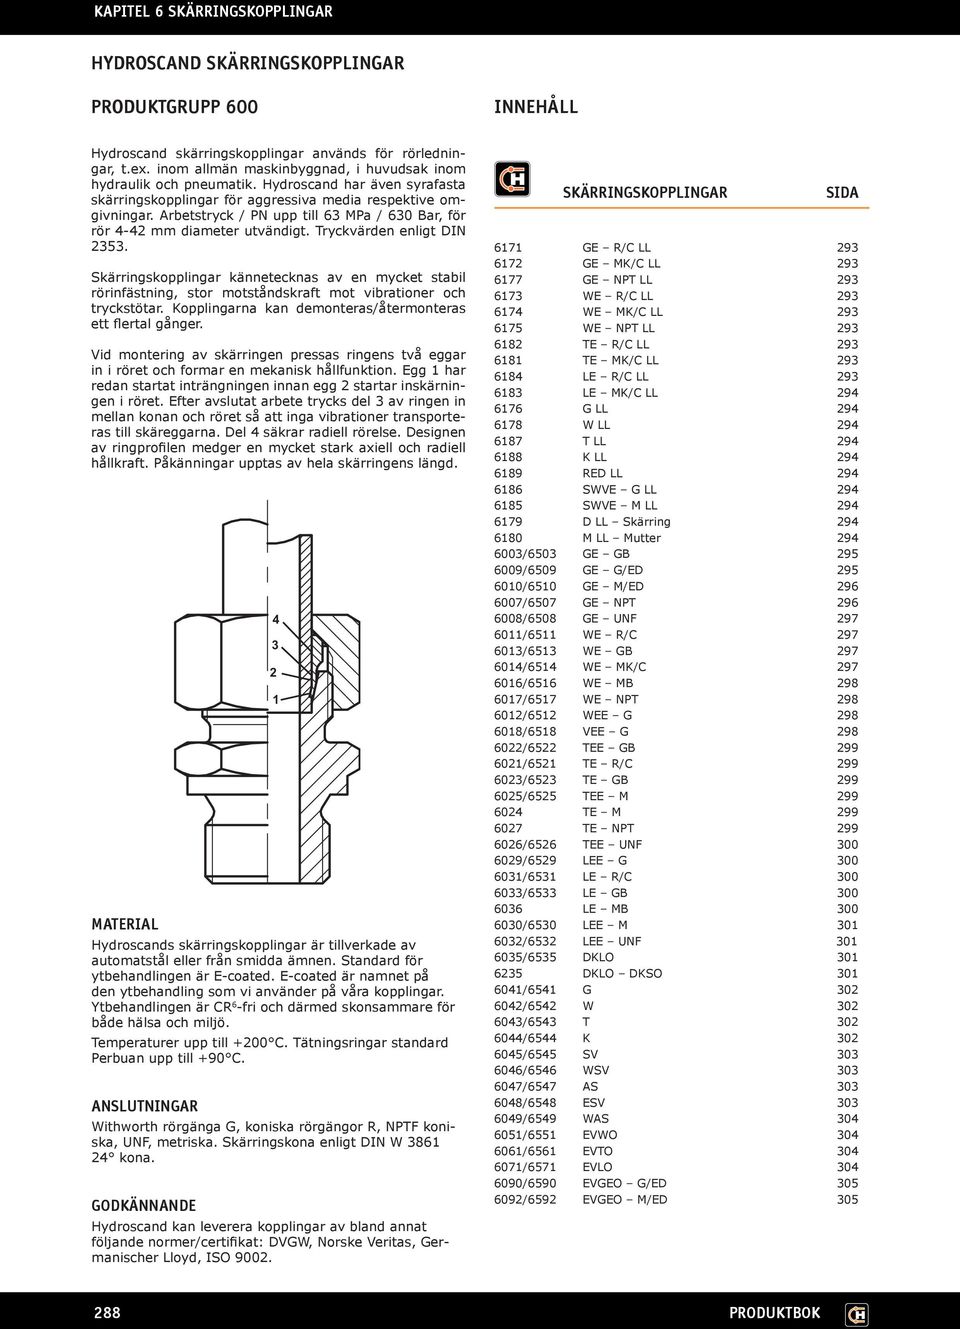 Tryckvärden enligt DIN 2353. Skärringskopplingar kännetecknas av en mycket stabil rörinfästning, stor motståndskraft mot vibrationer och tryckstötar.